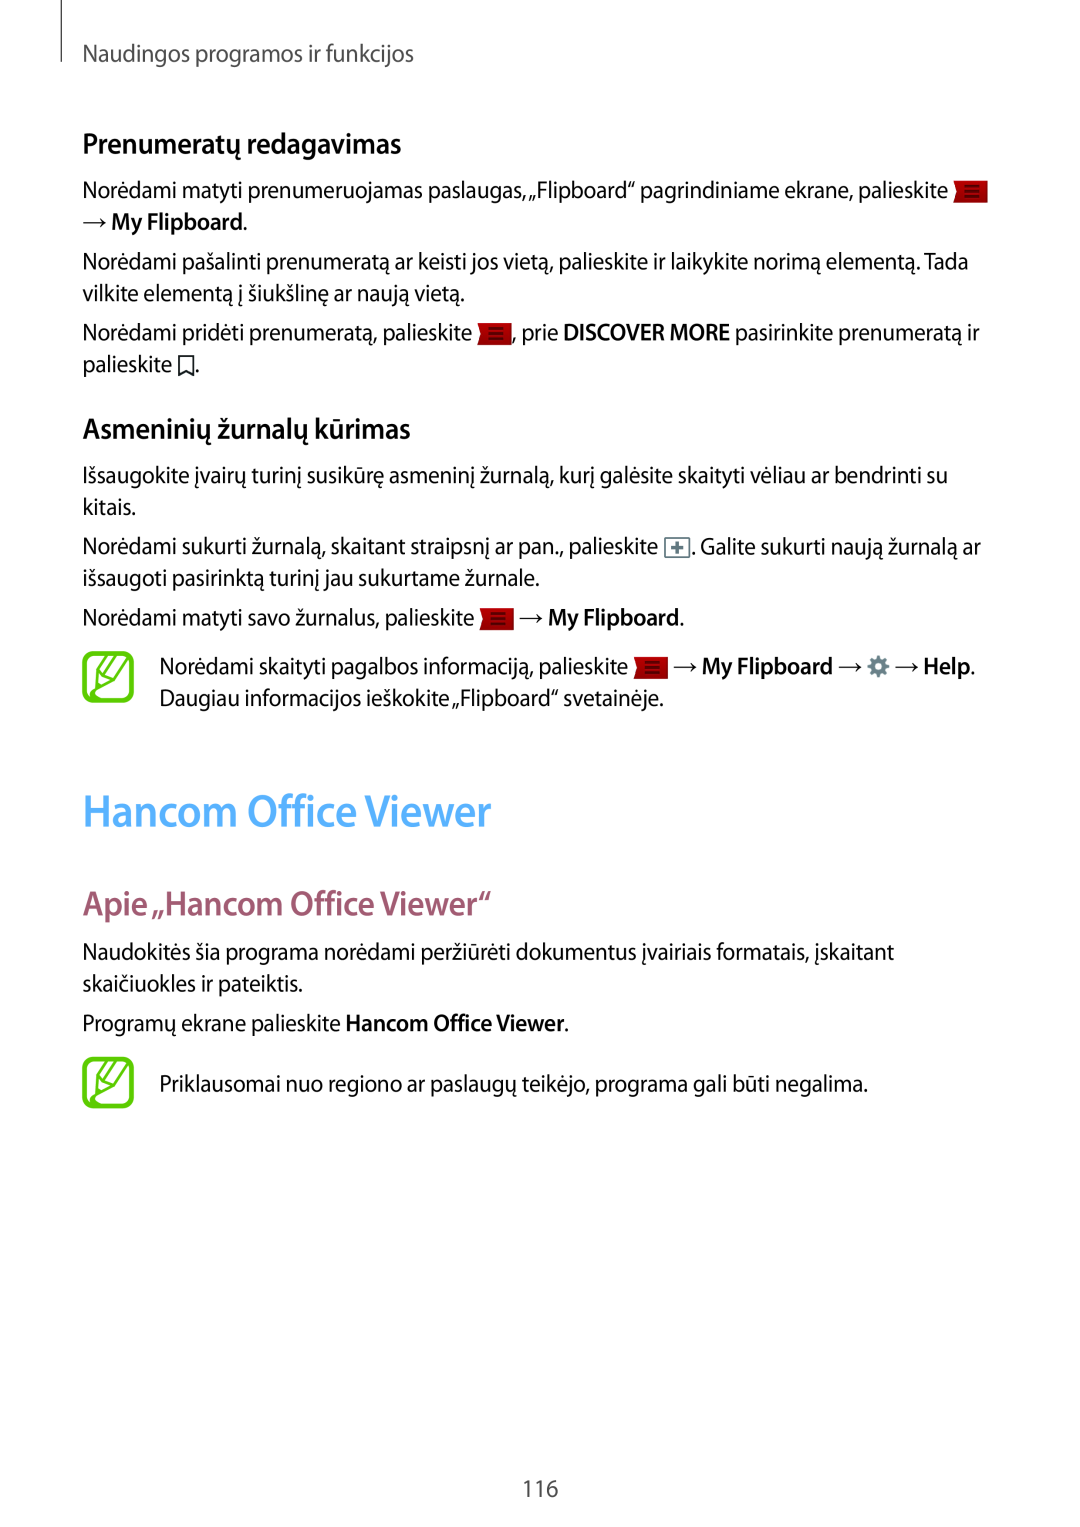 Samsung SM-T800NHAASEB Apie„Hancom Office Viewer“, Prenumeratų redagavimas, Asmeninių žurnalų kūrimas, → My Flipboard 